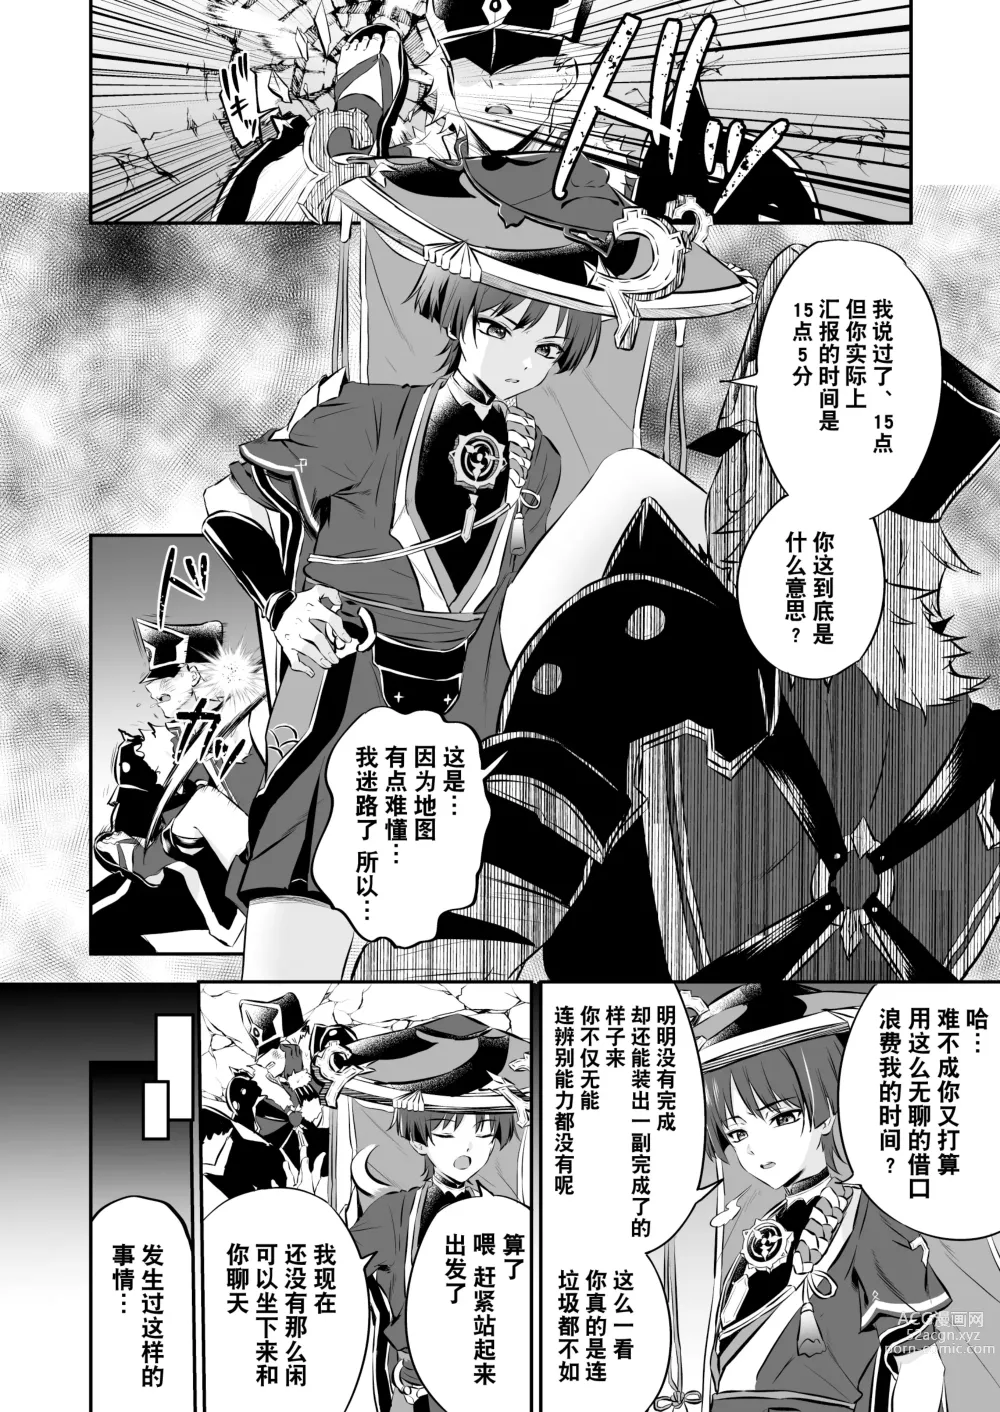 Page 5 of doujinshi  散兵大人哪怕是因为药物兴奋也不可能任由愚人众肆意摆布的吧